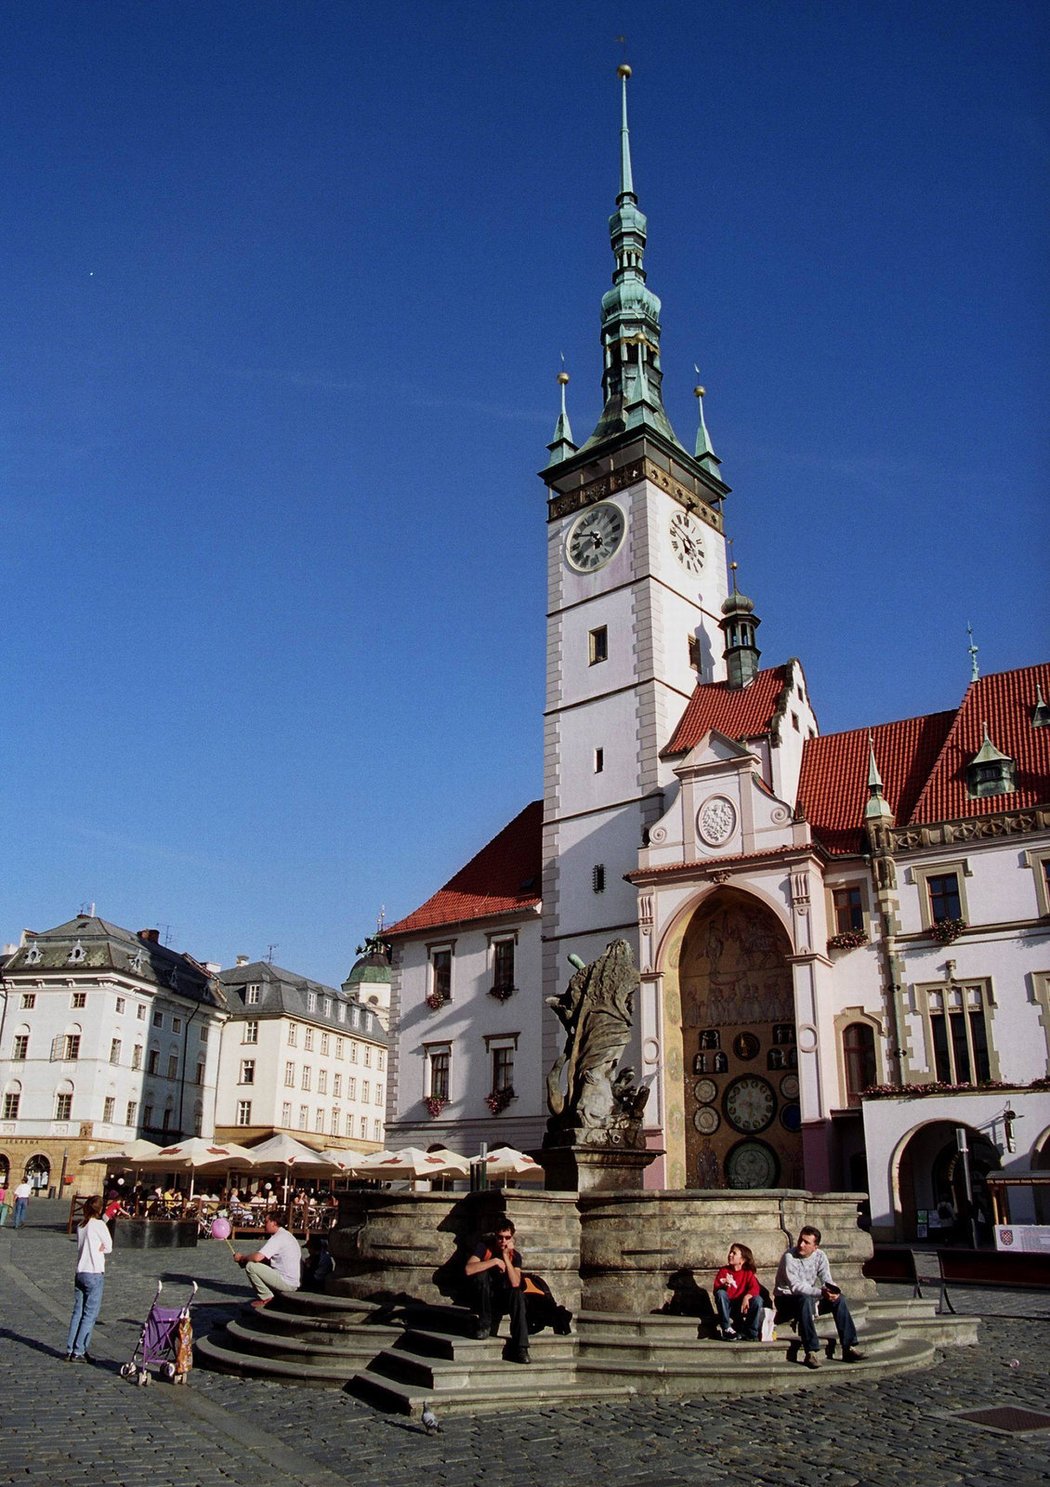 Radniční věž s orlojem v Olomouci je přístupná třikrát denně zdarma, jen se musíte trefi t do času – prohlídky jsou v 9.30, 11 a 15 hodin